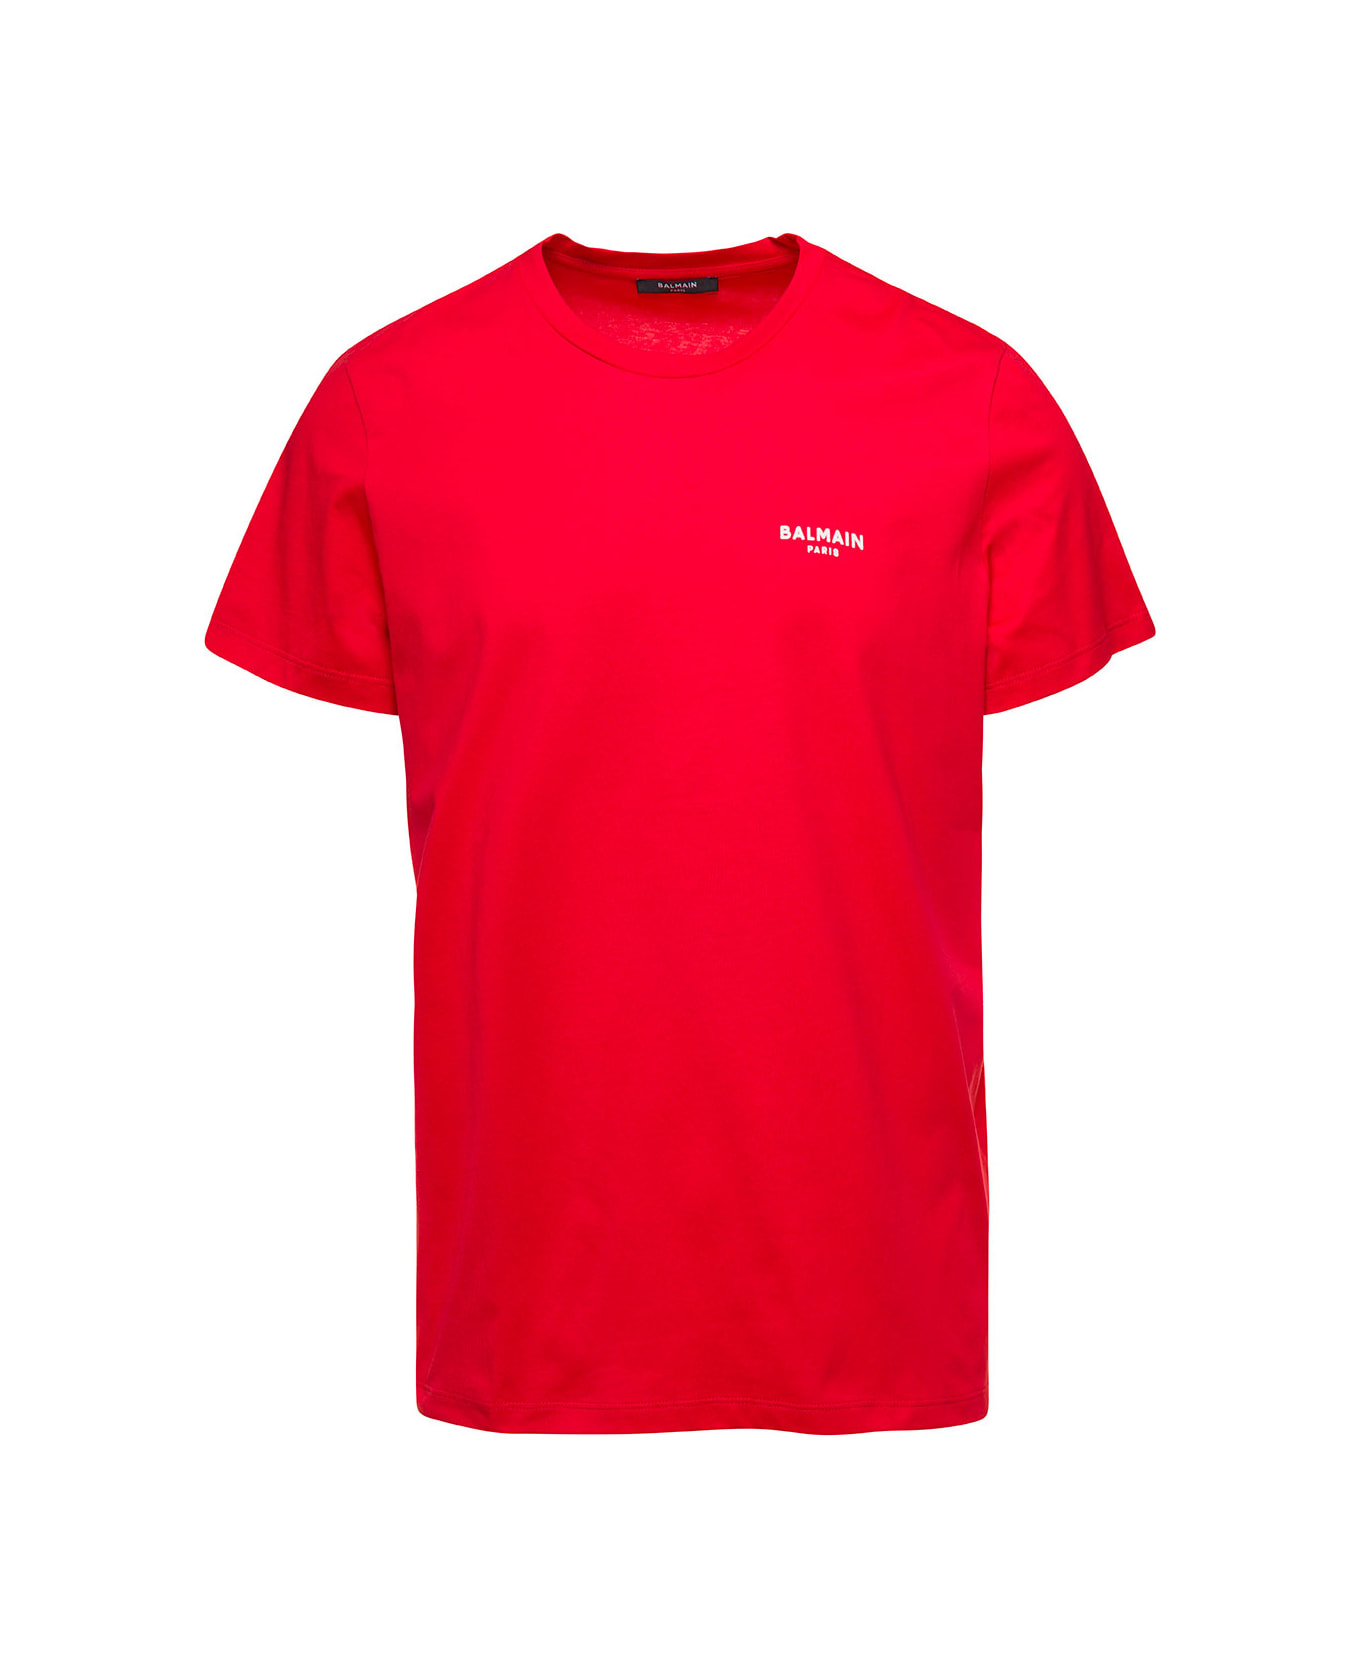 Balmain Flock T-shirt - Red シャツ